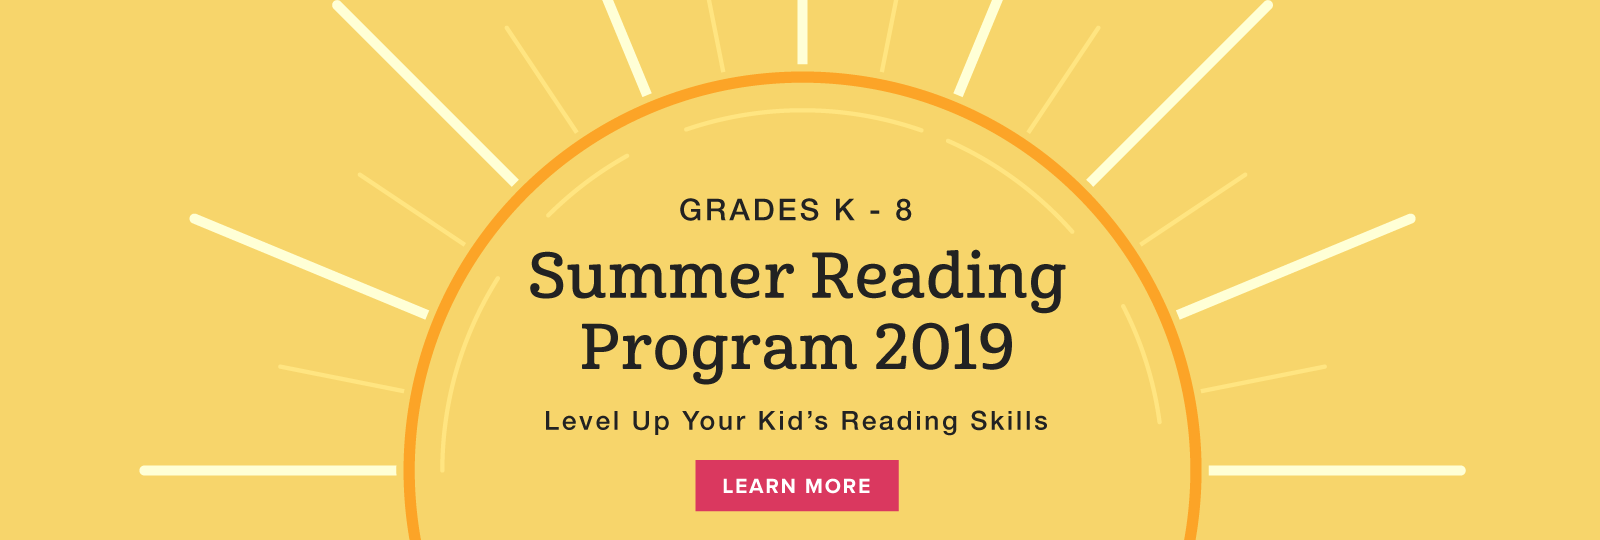 Summer Reading Program 2019